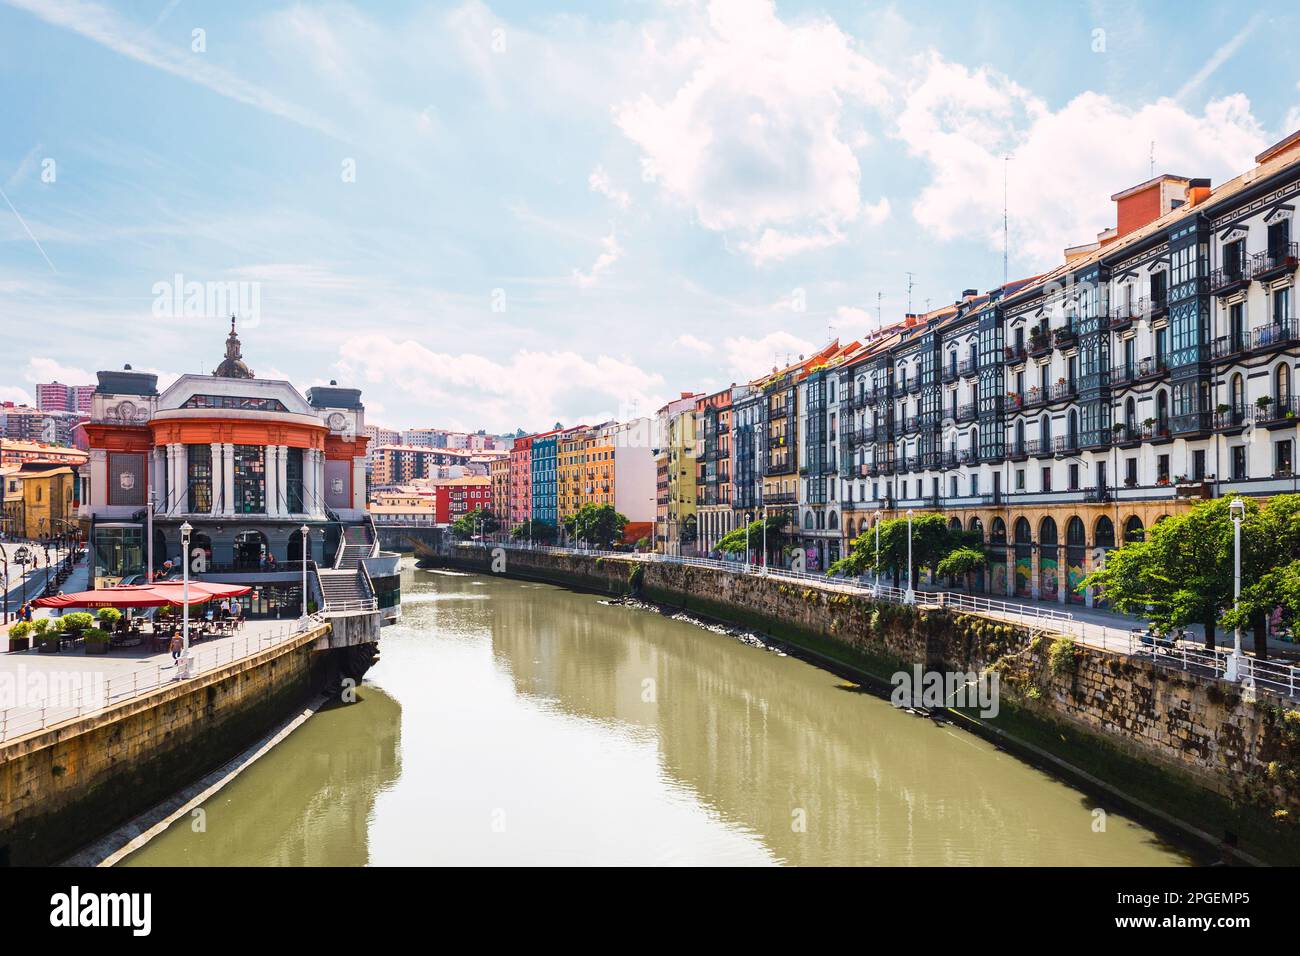 Vista panoramica della città di Bilbao, il mercato Ribera con il fiume Nervion e la sua architettura colorata in una giornata di sole. Godetevi una bella vacanza nel Basq Foto Stock